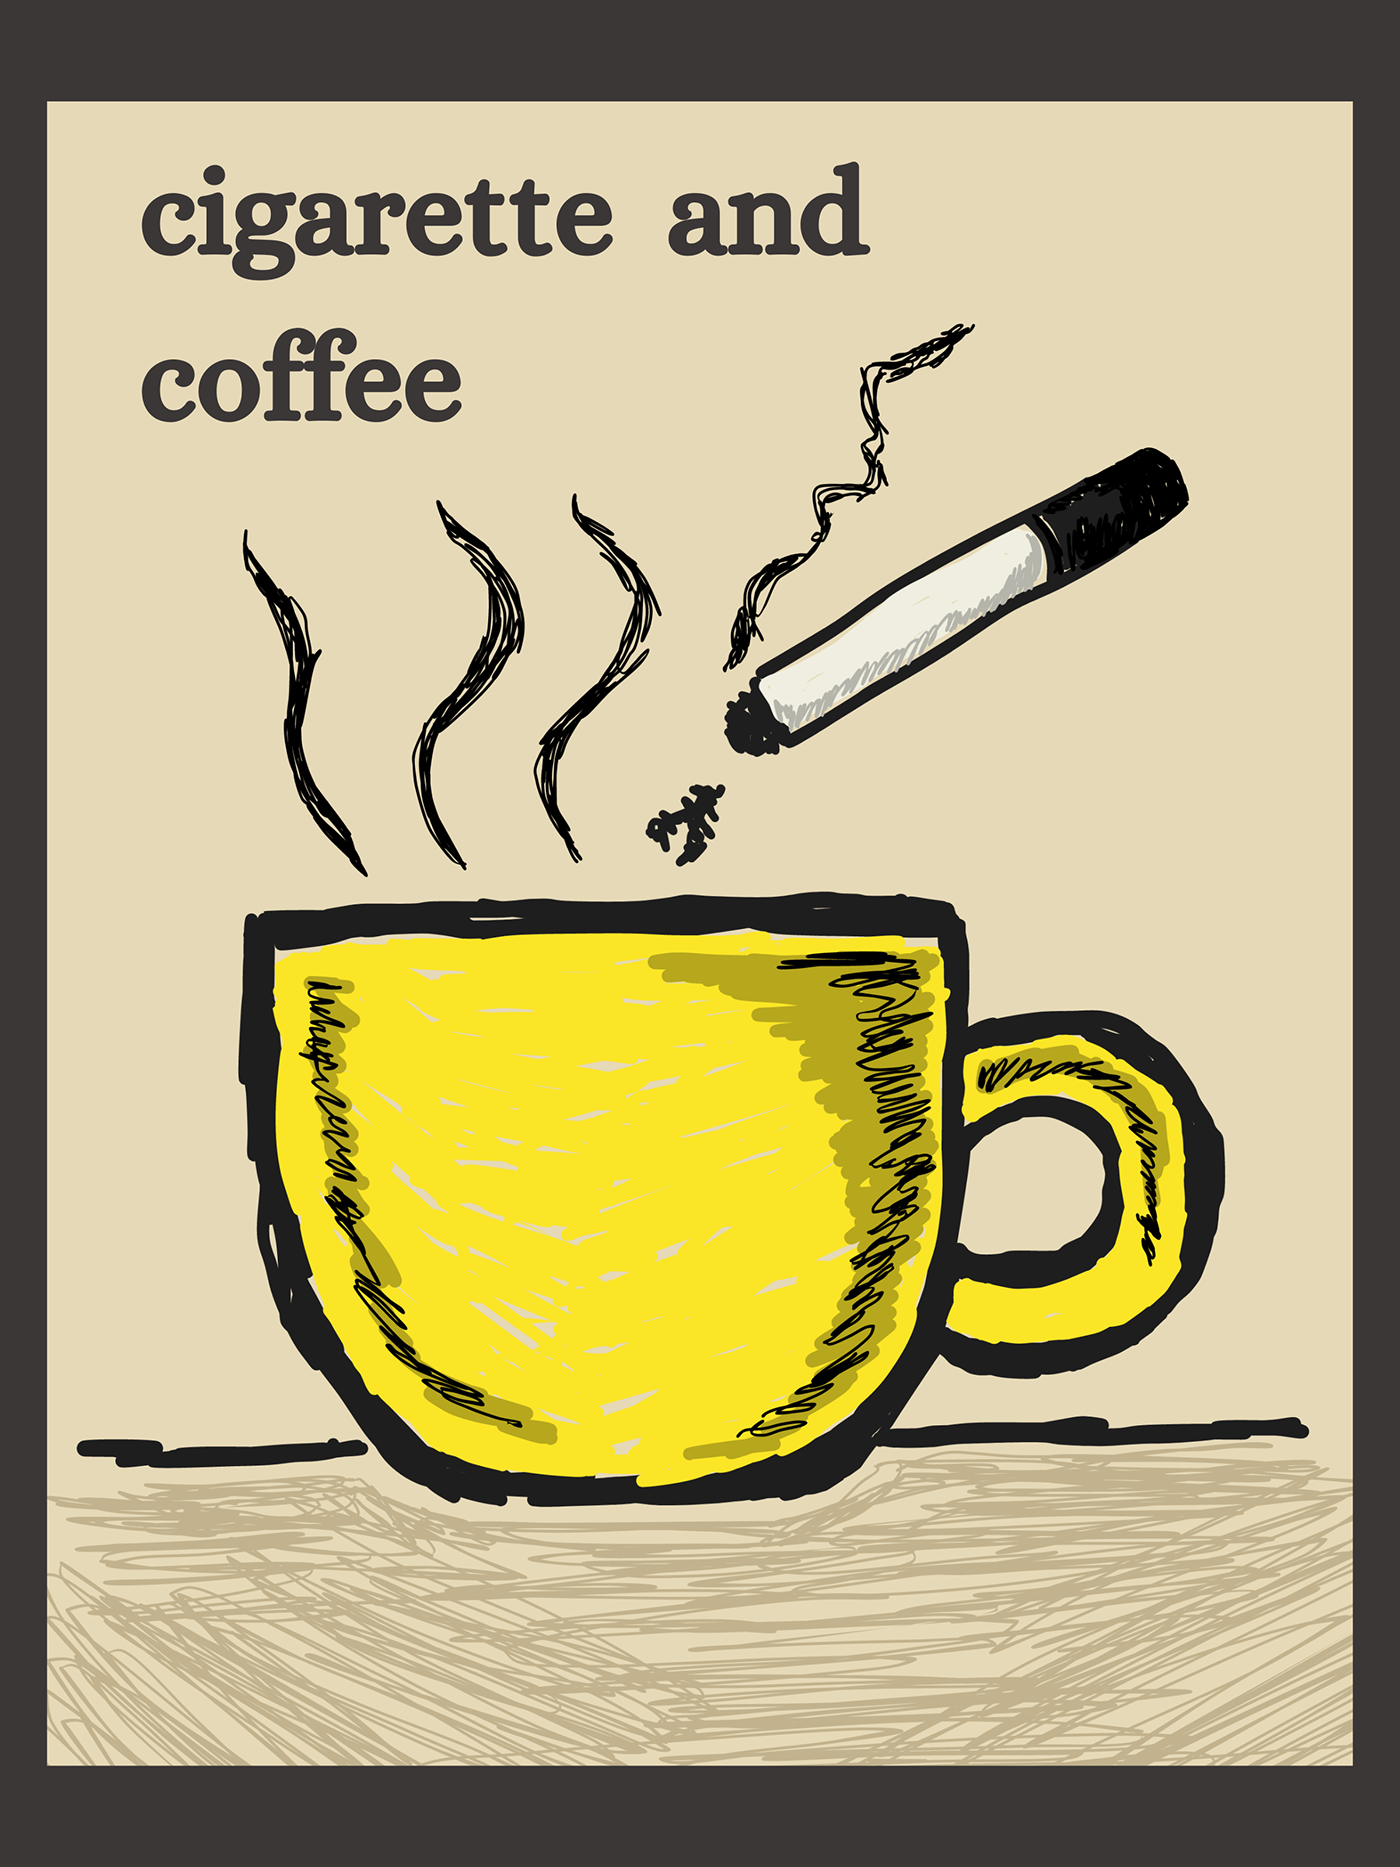 Coffee cafe Cigarro cigarette Ilustração